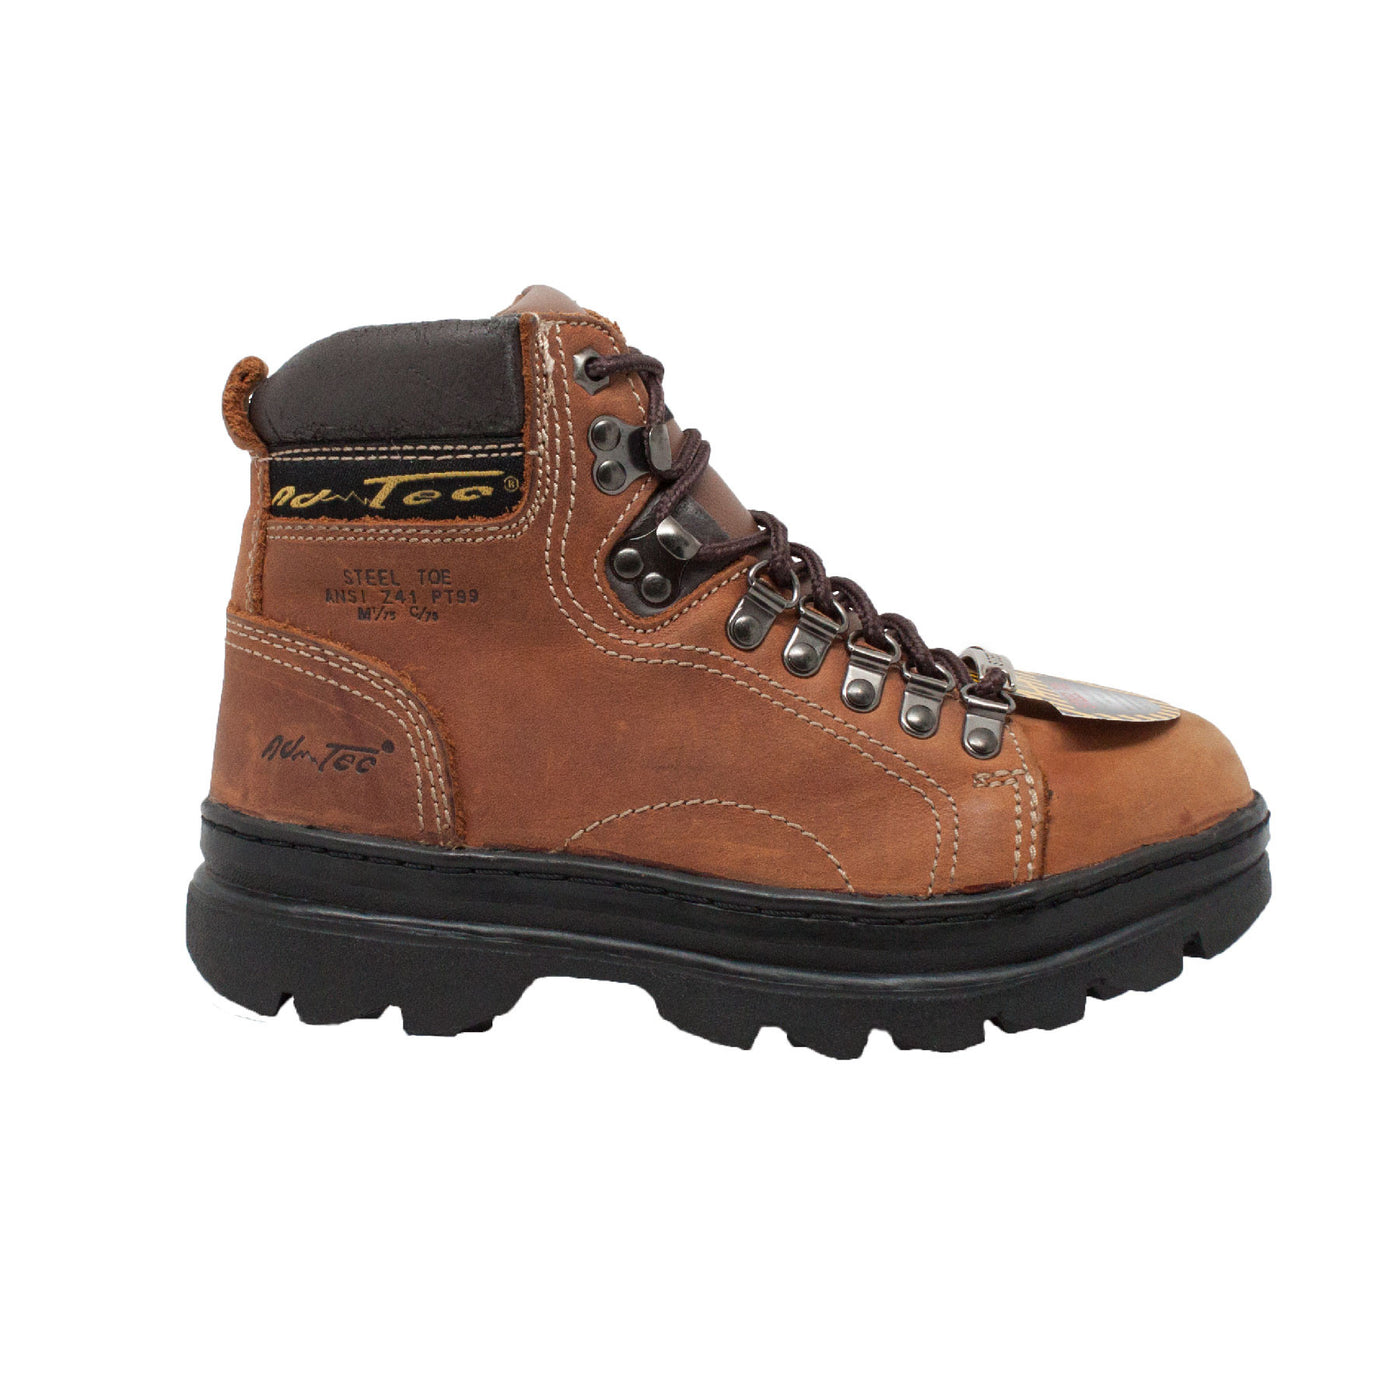 Women's 6" Steel Toe Work Boot Brown - 2977 - Shop Genuine Leather men & women's boots online | AdTecFootWear